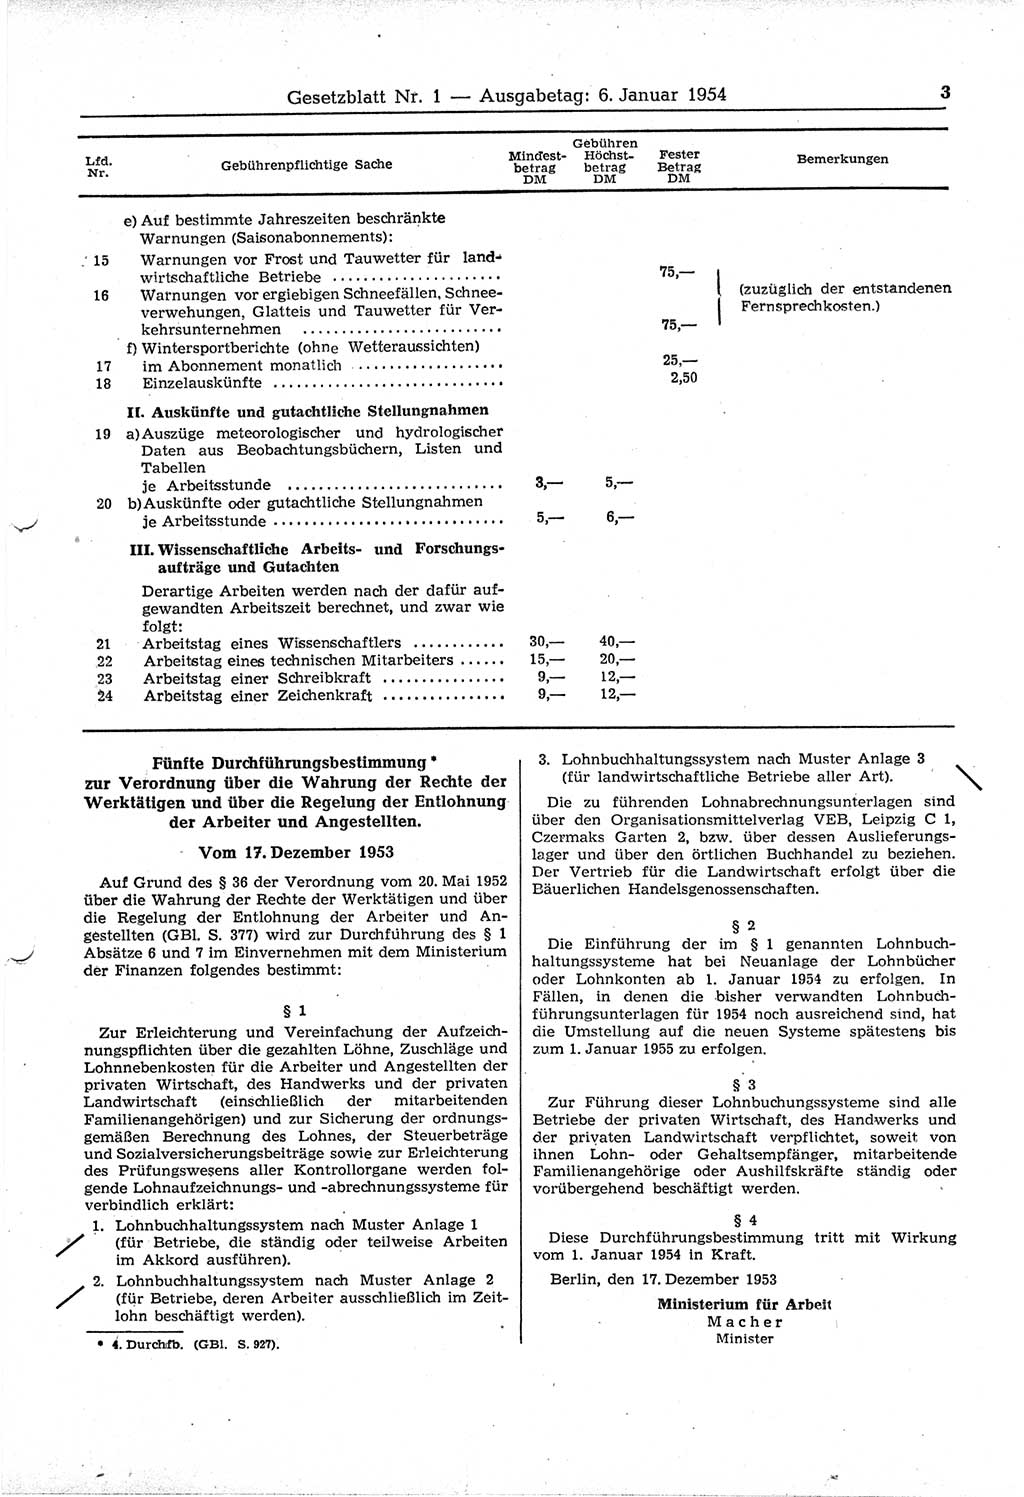 Gesetzblatt (GBl.) der Deutschen Demokratischen Republik (DDR) 1954, Seite 3 (GBl. DDR 1954, S. 3)